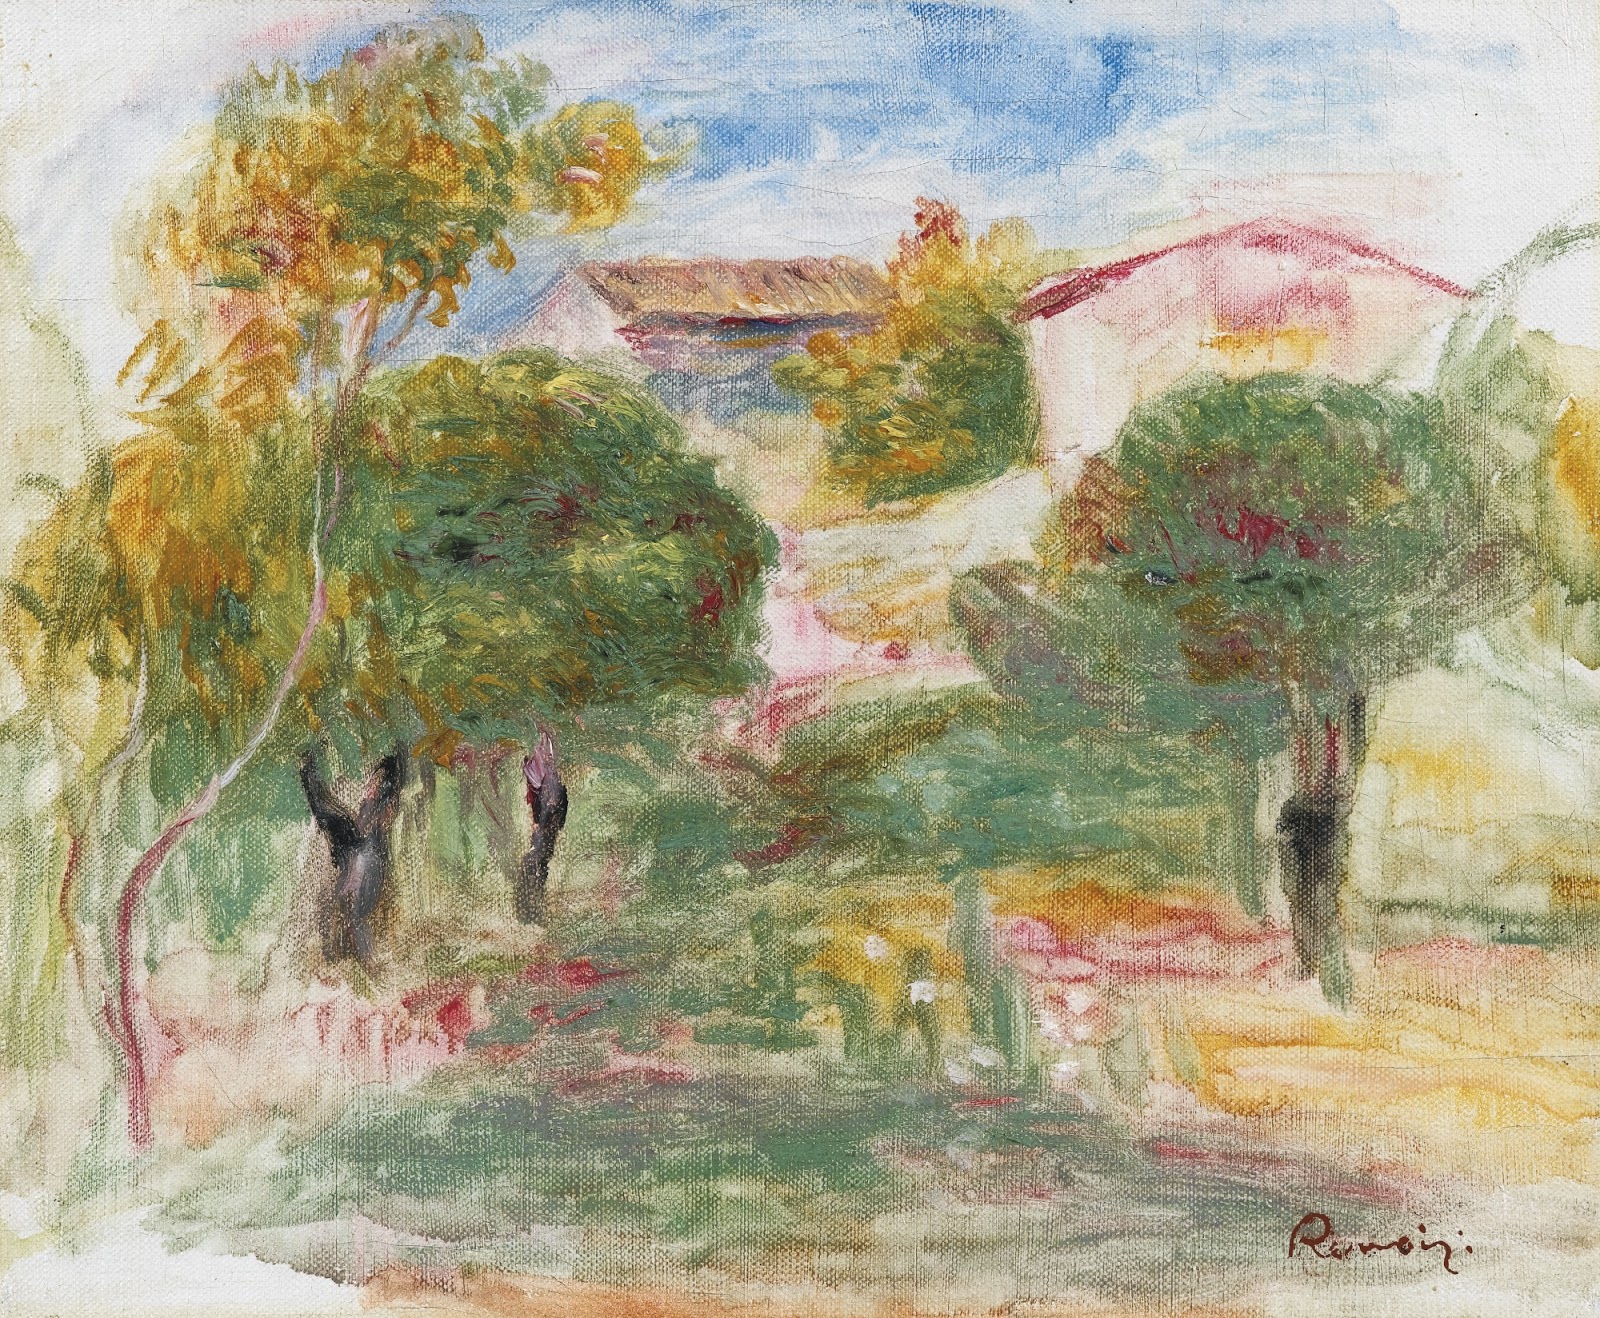 Pierre+Auguste+Renoir-1841-1-19 (481).jpg